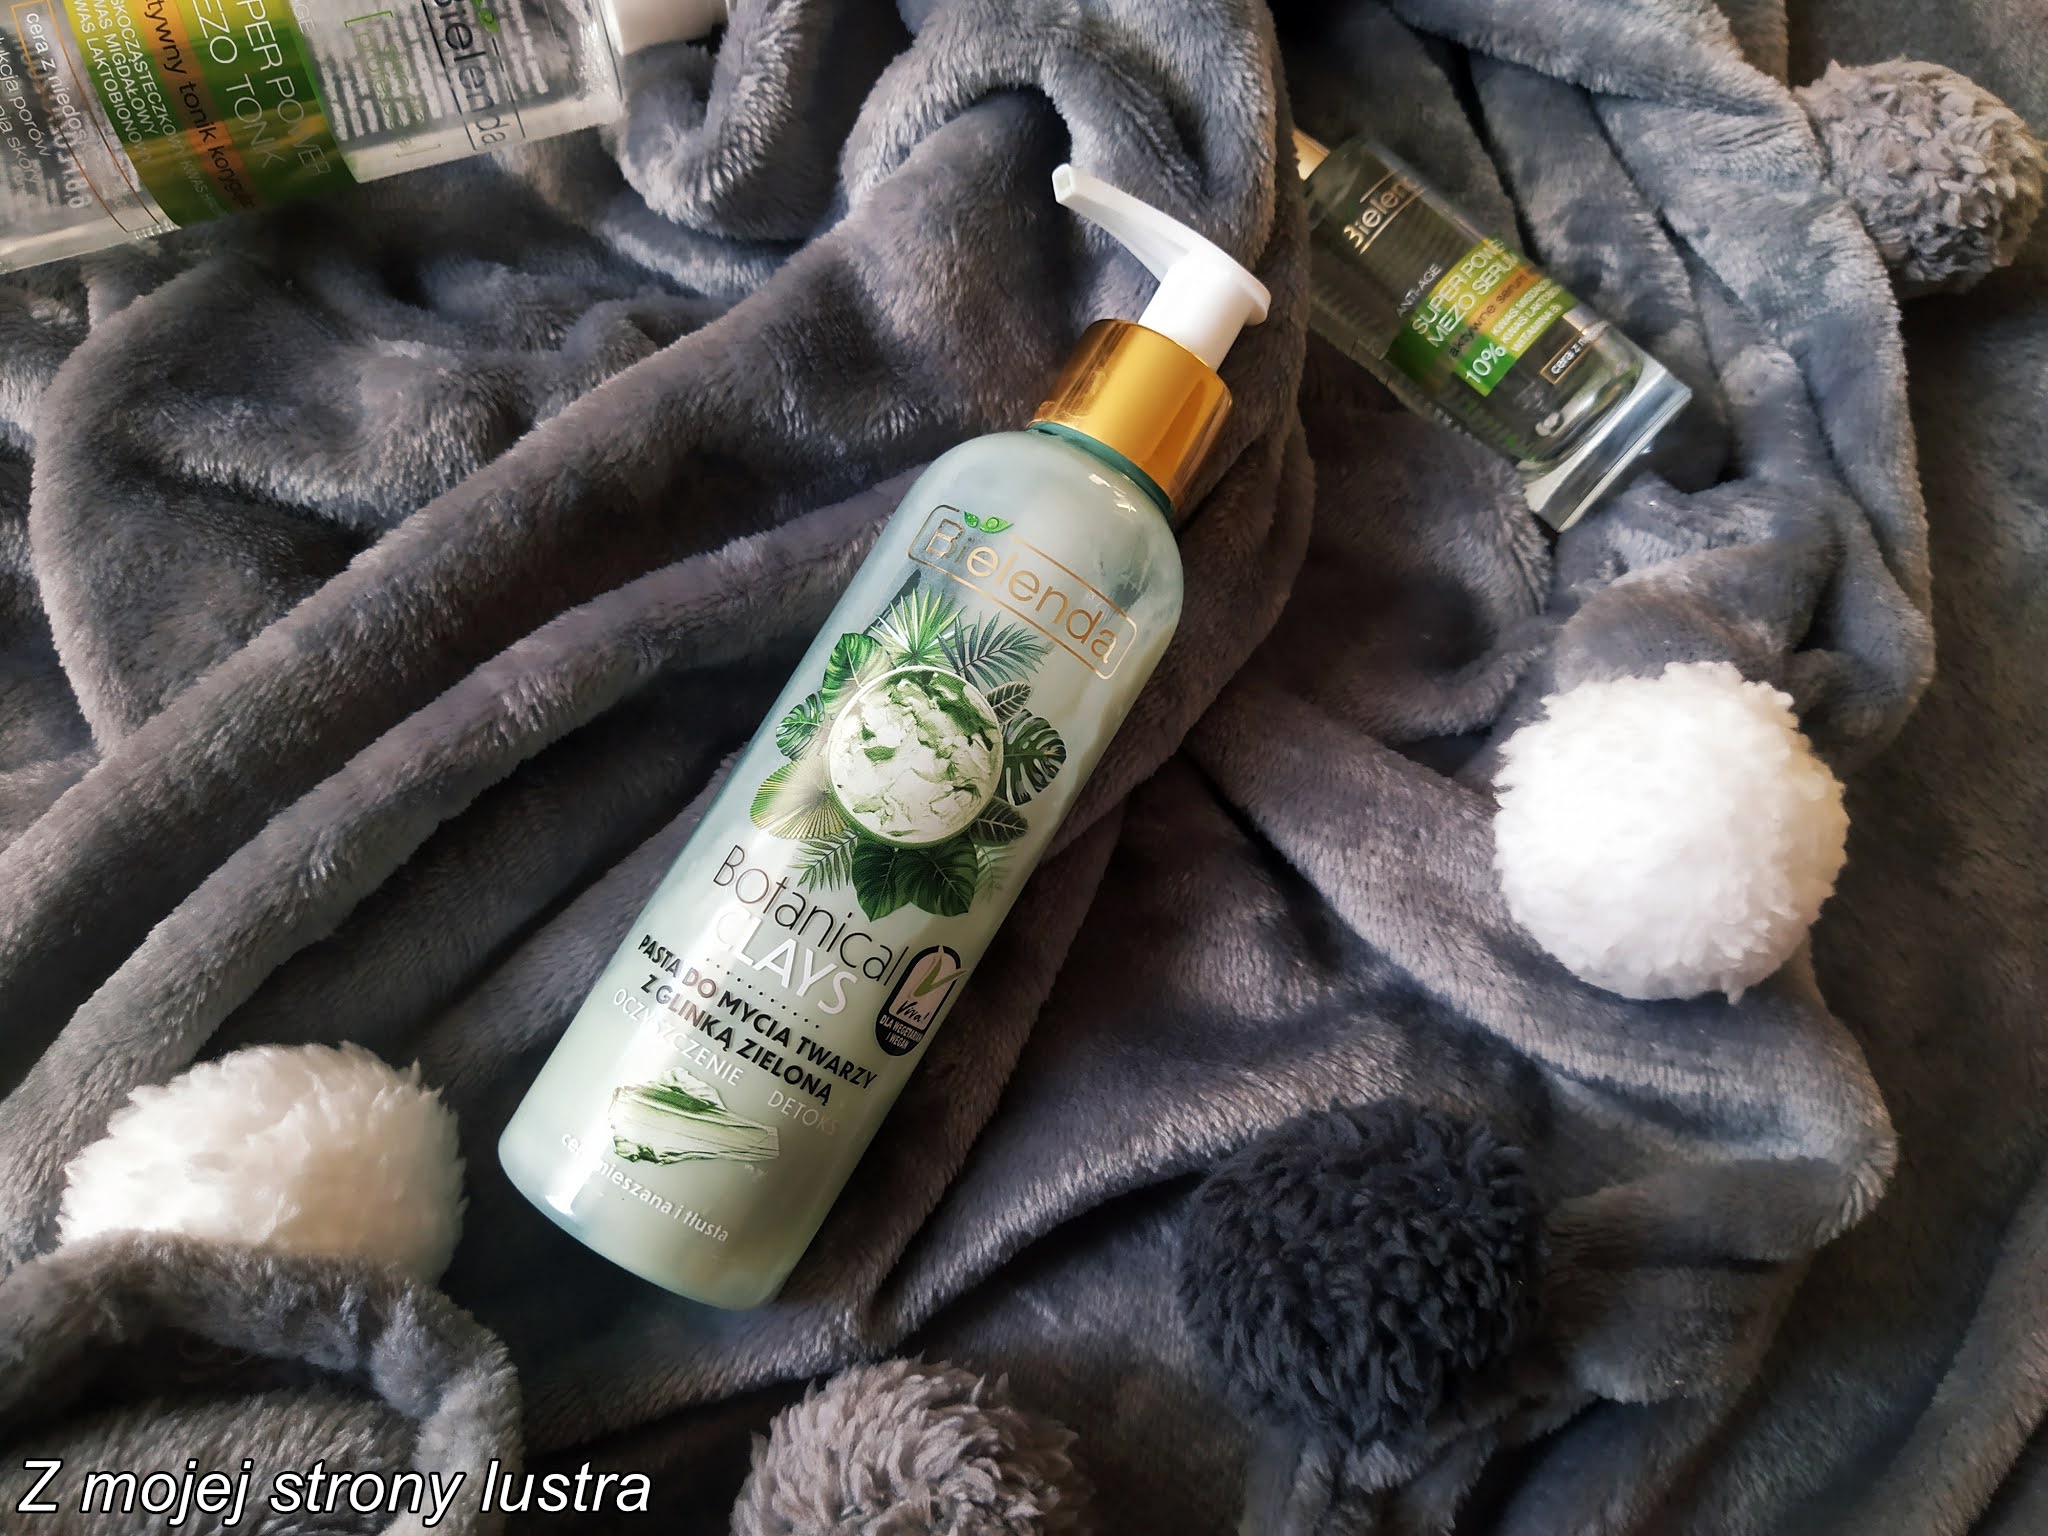 Bielenda Botanical CLAYS pasta do mycia twarzy z zieloną glinką - recenzja